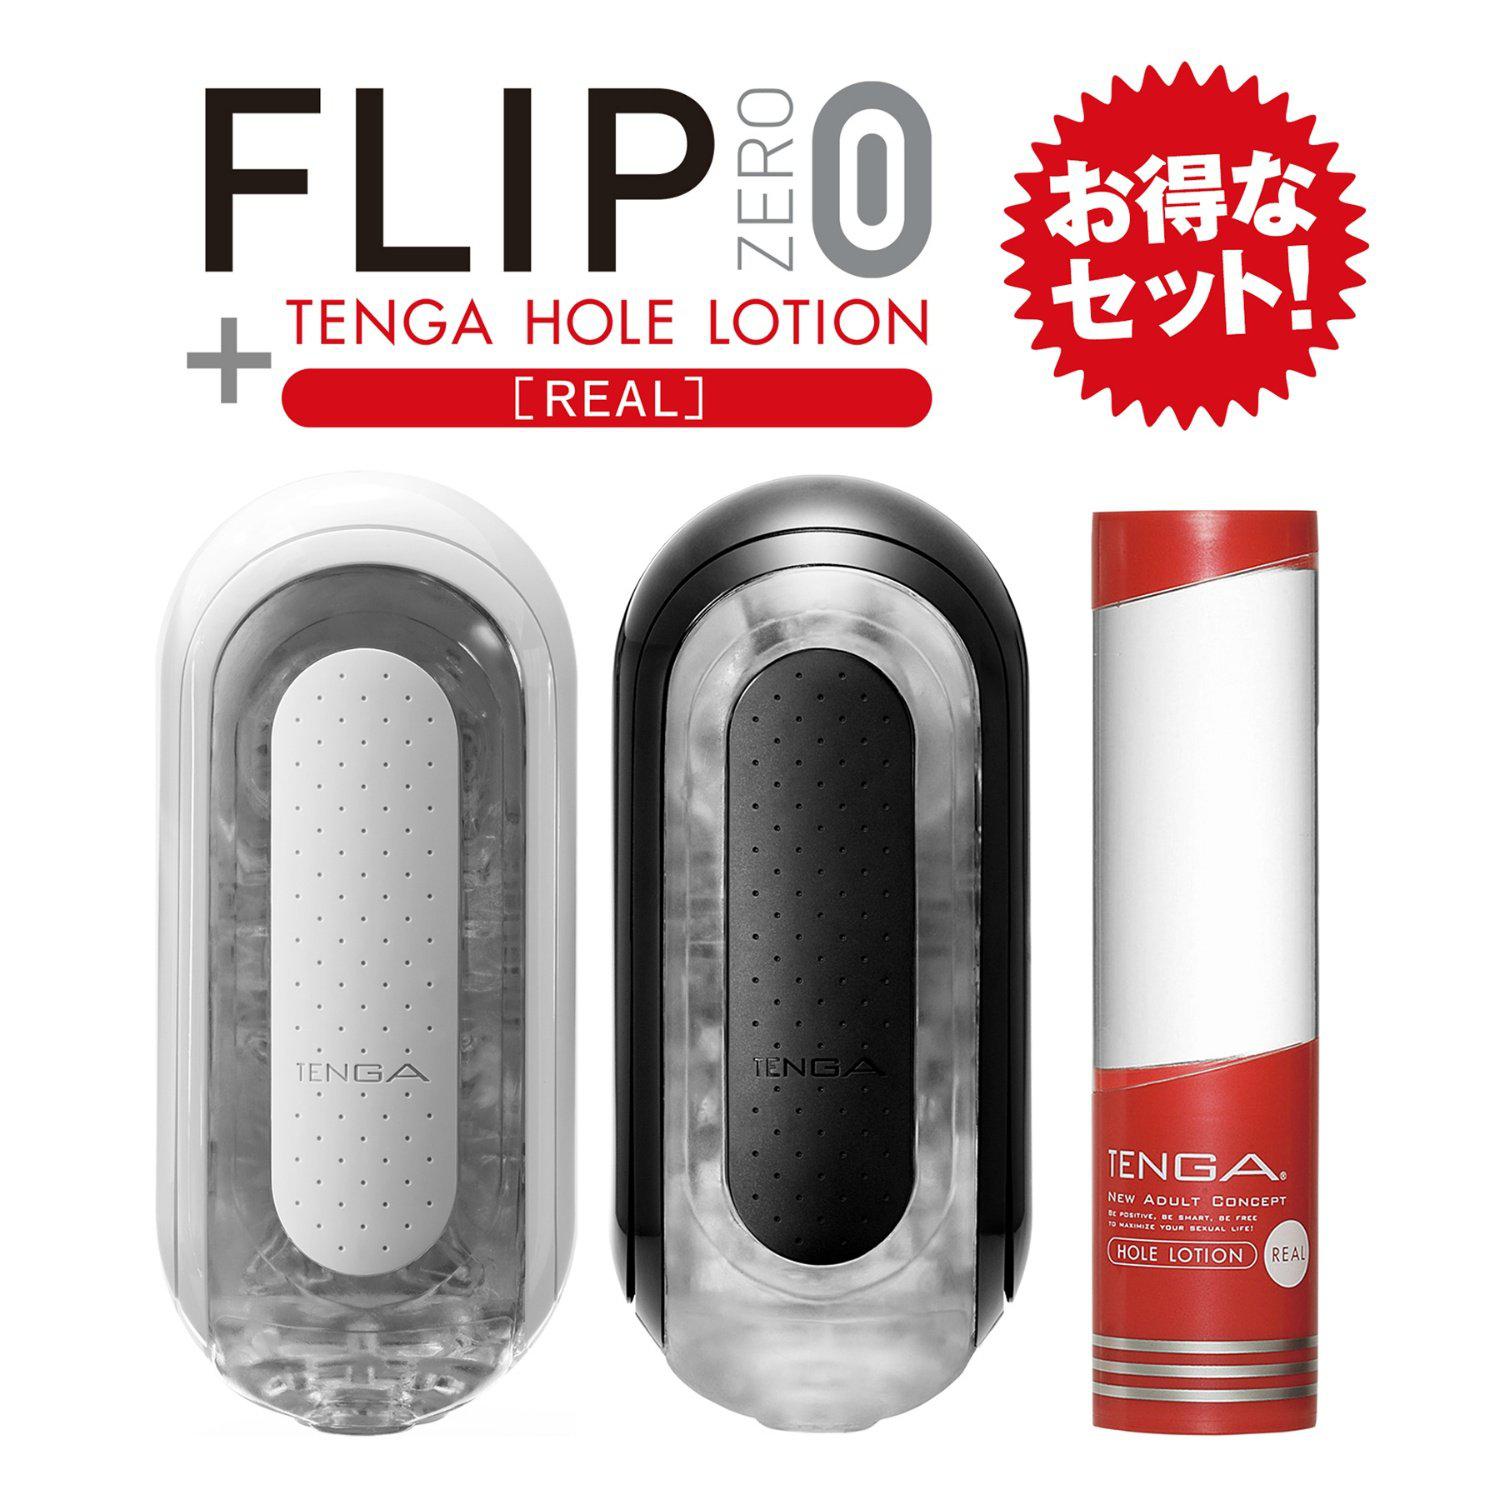 TENGA FLIP ZERO 黑白套裝-TENGA-TENGA 香港網上專門店 - 專營 TENGA 飛機杯及潤滑劑